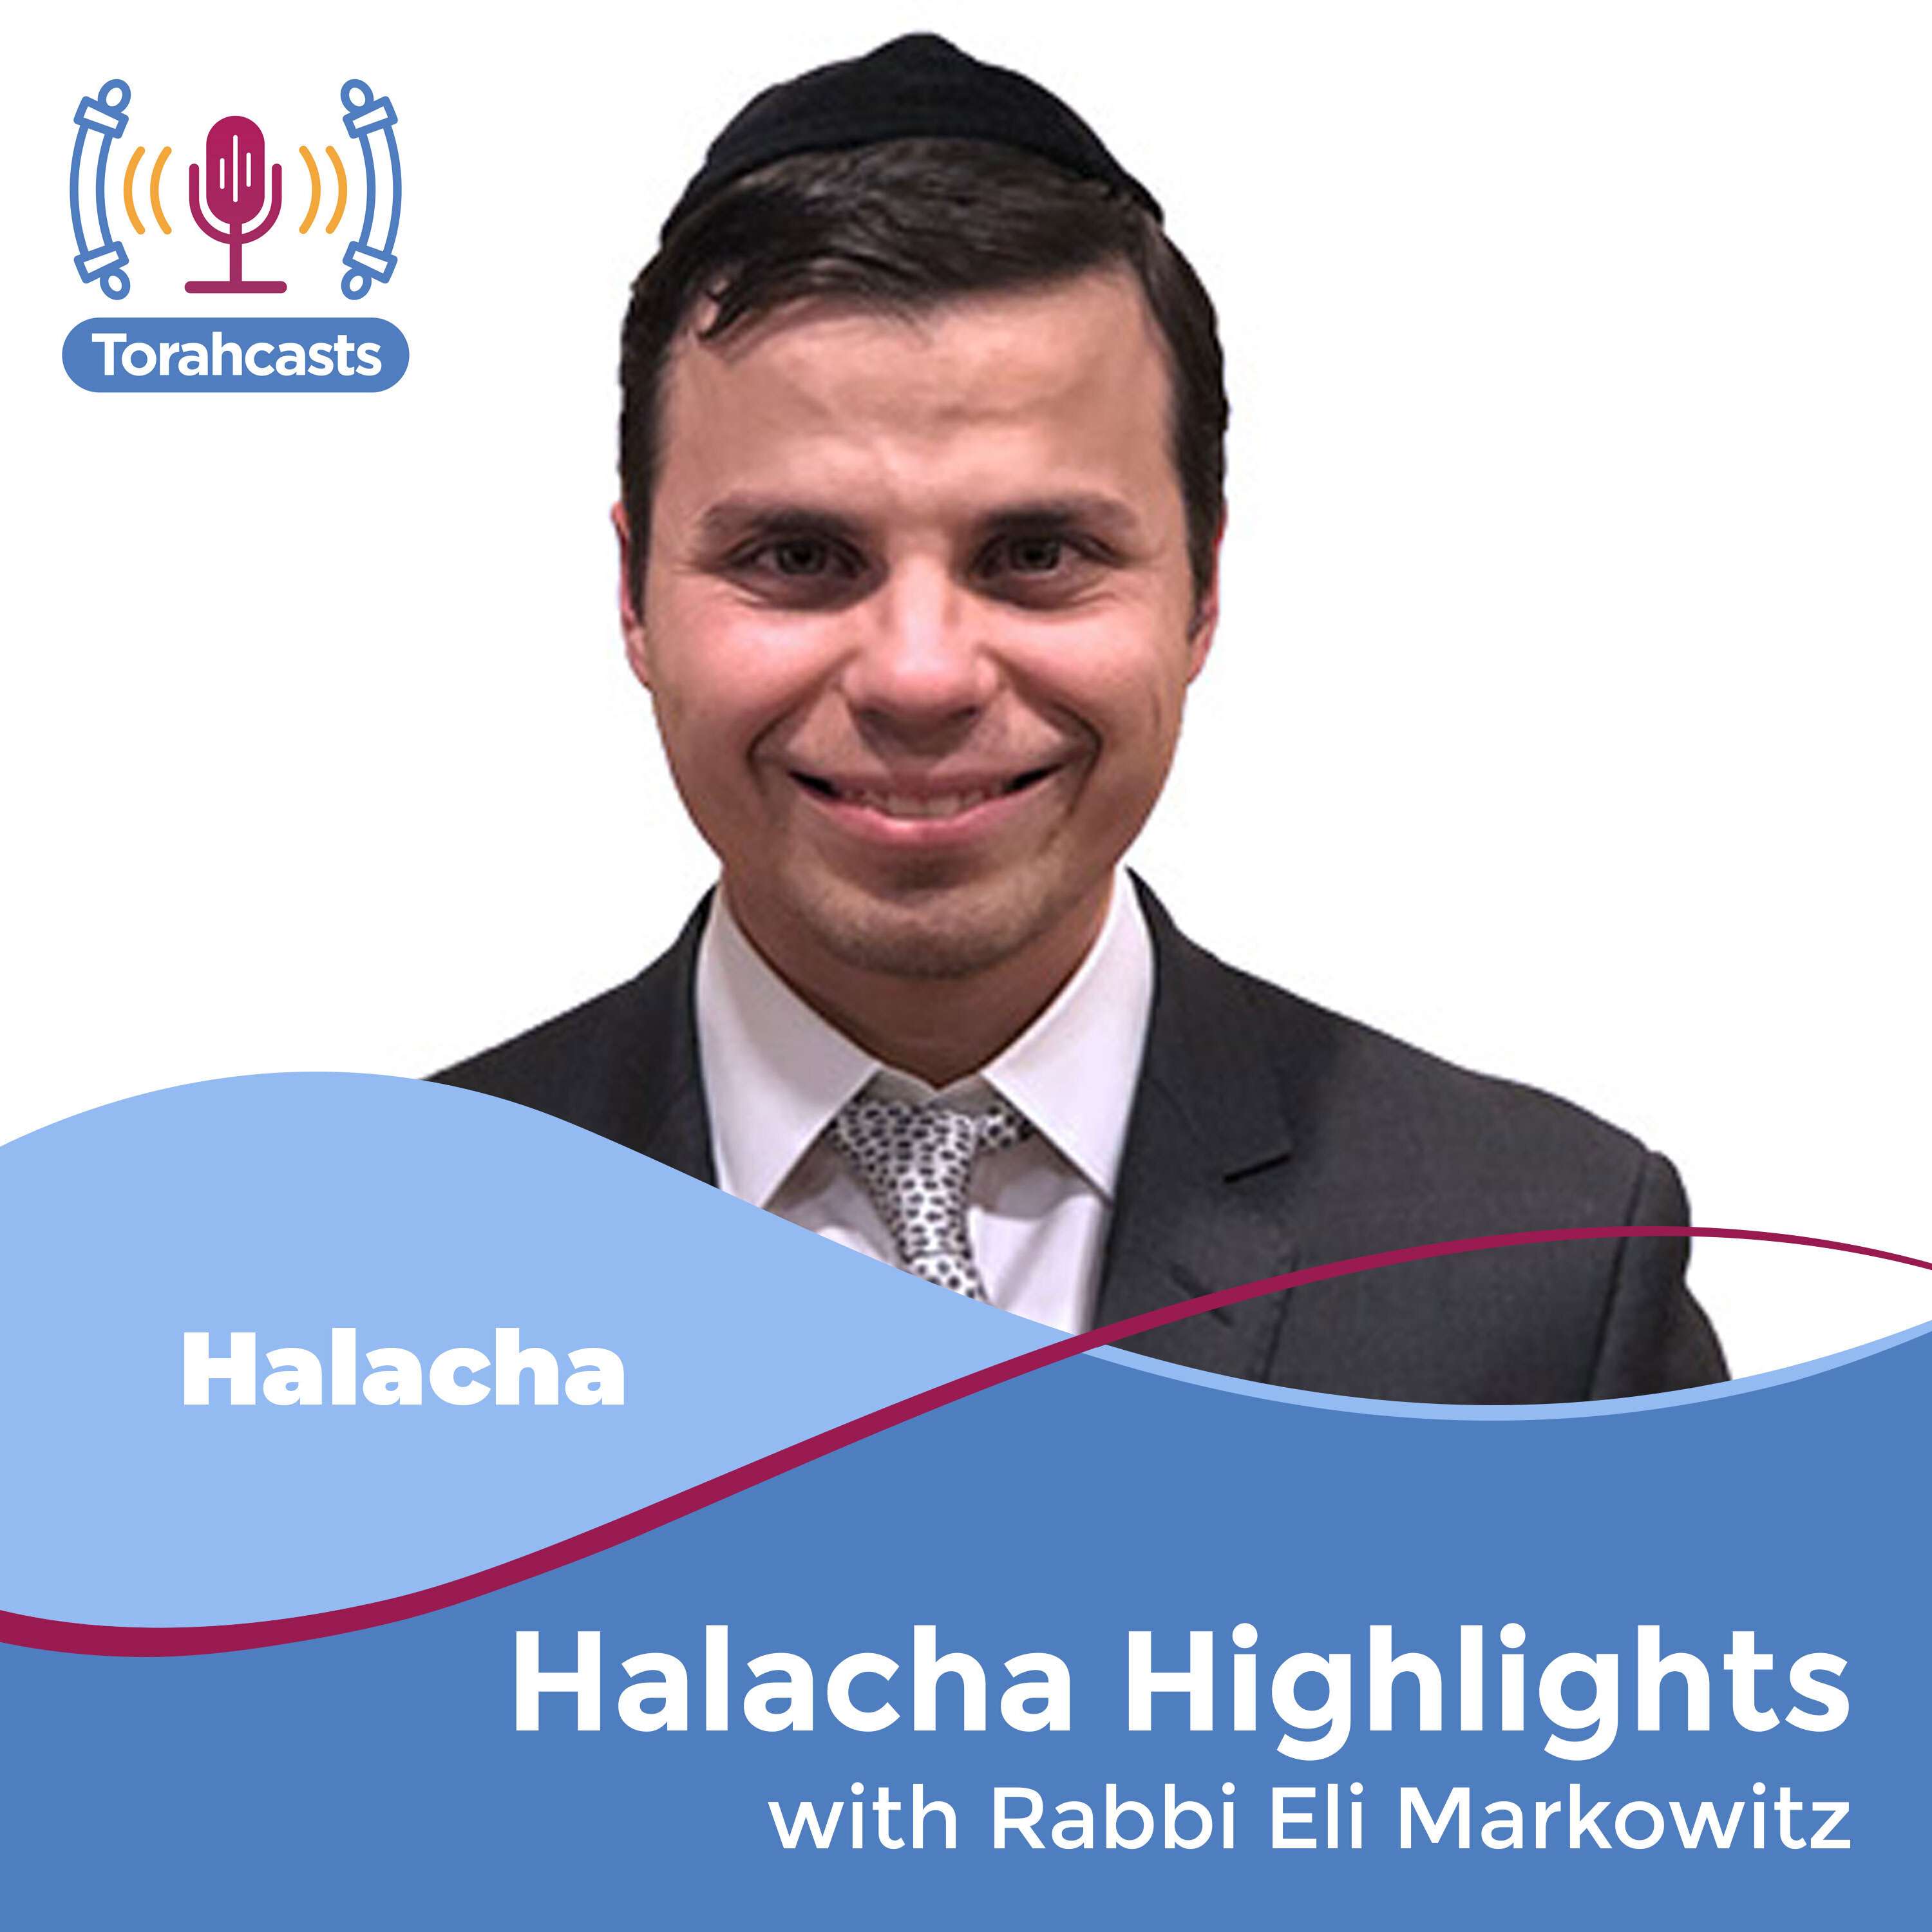 Halacha Highlights